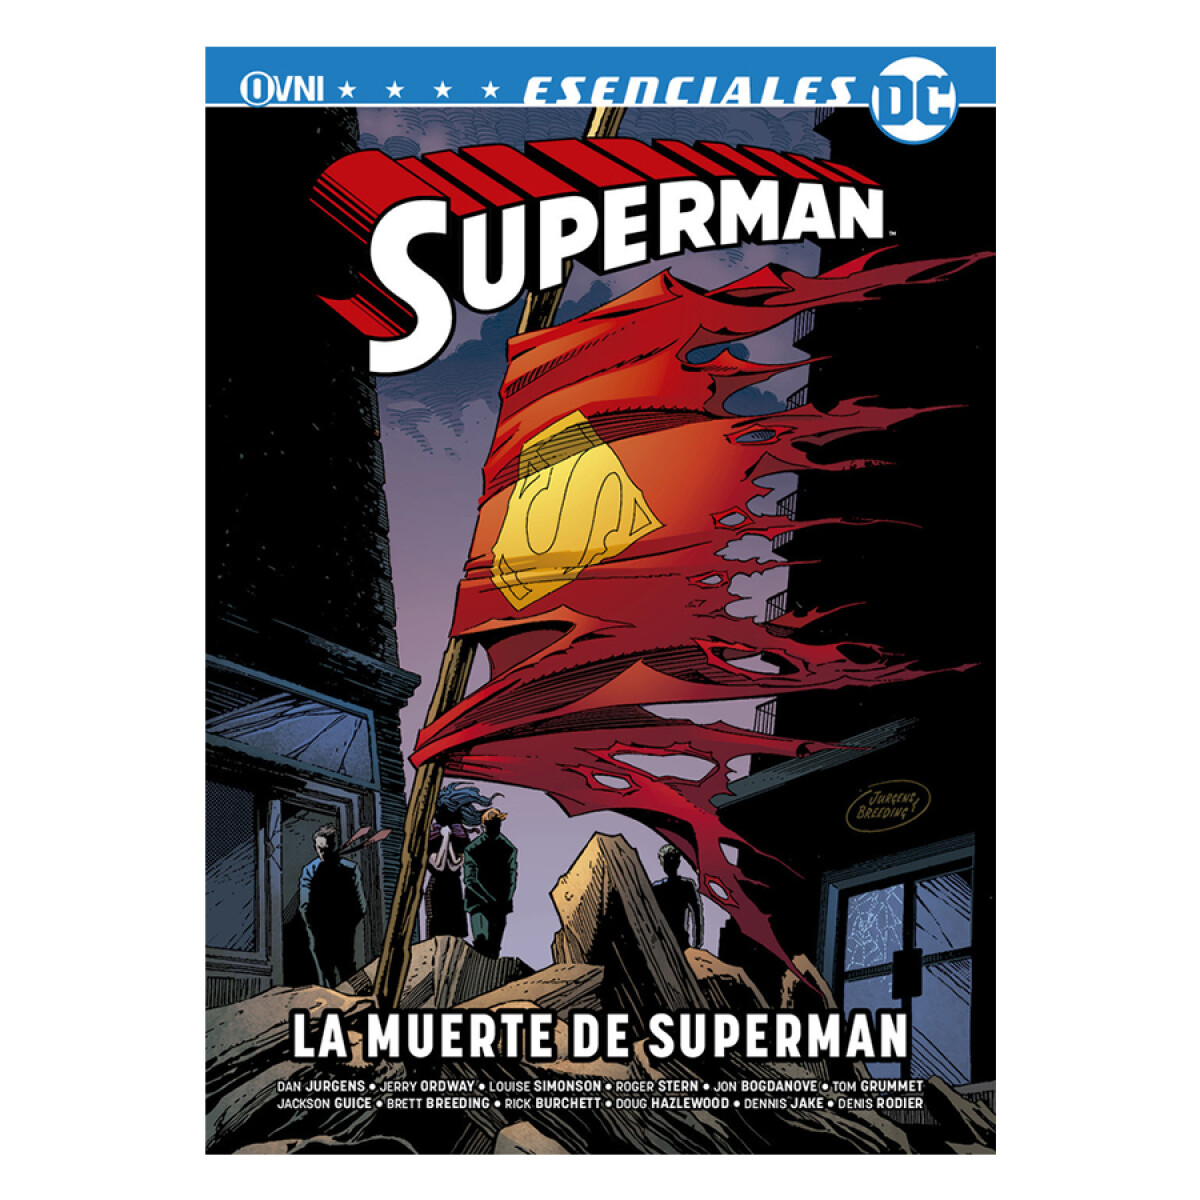 La Muerte de SUPERMAN - Escenciales 